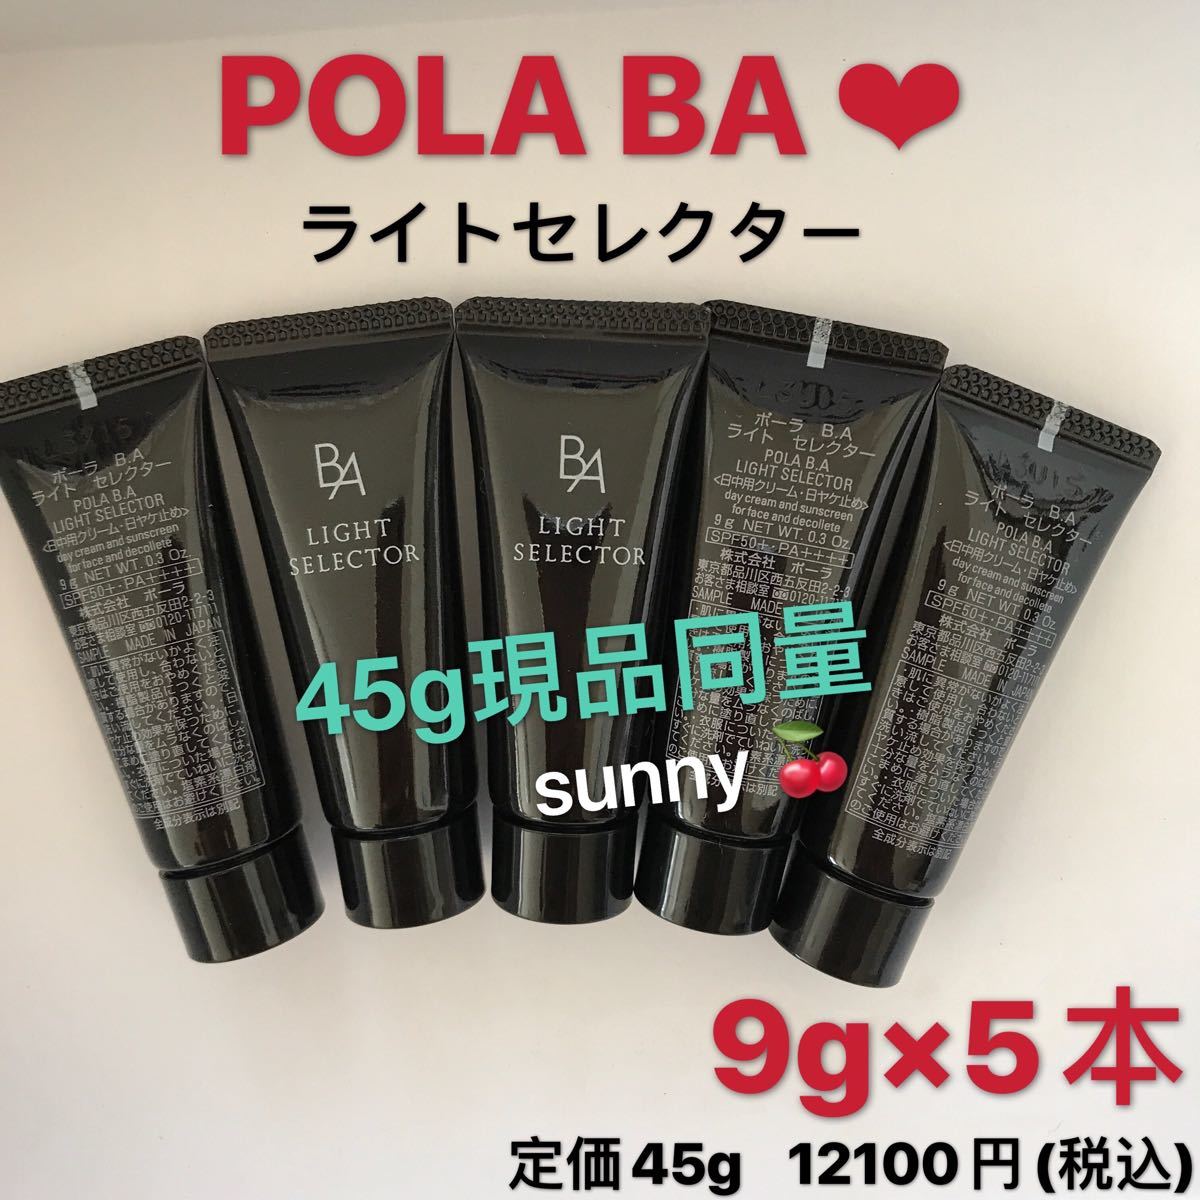 【受賞店舗】 最新 ポーラ POLA B.A クリーム N 8包 ライト セレクター 2包 アイゾーンクリーム pola BA サンプル